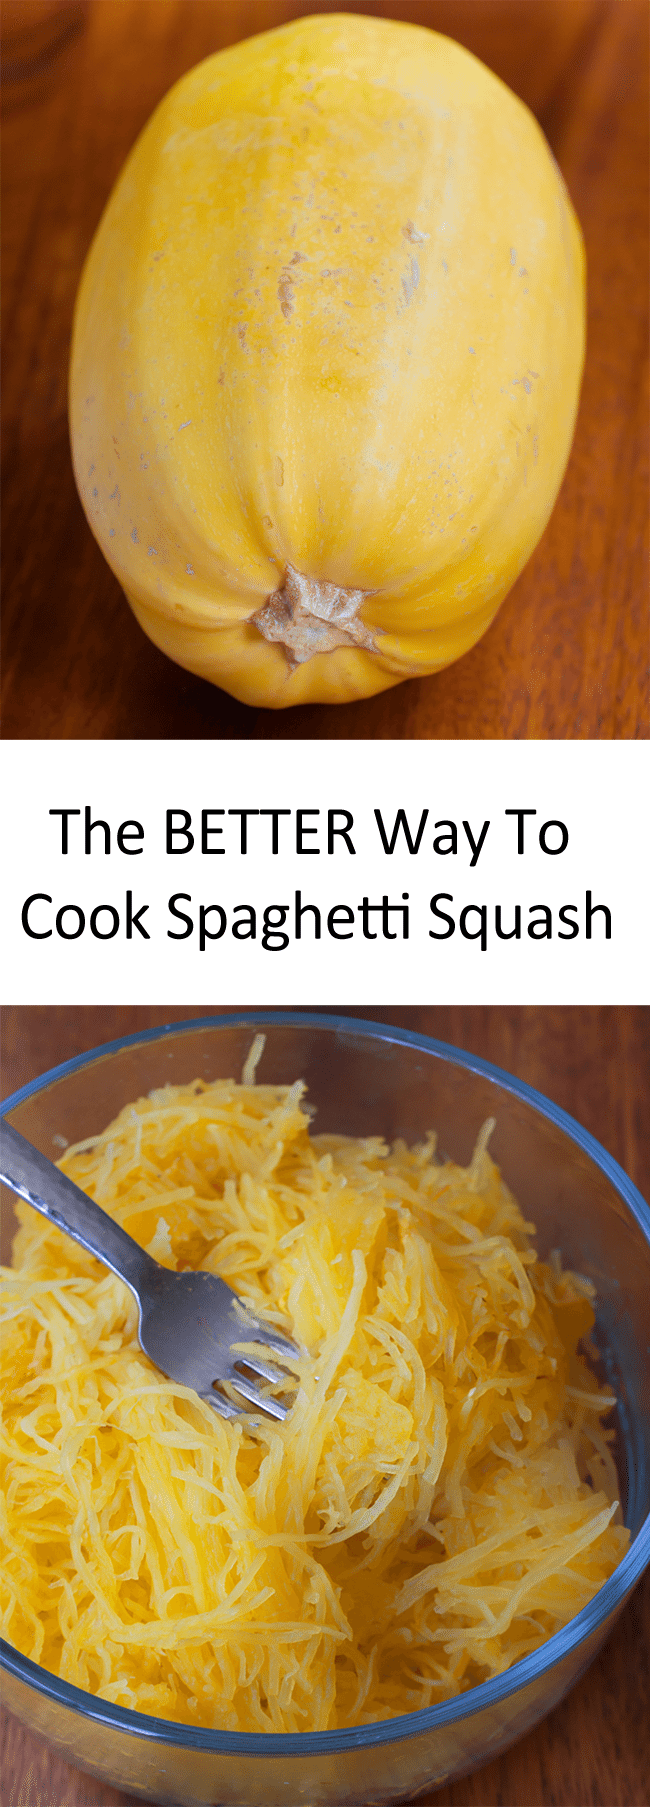 What is spaghetti squash?